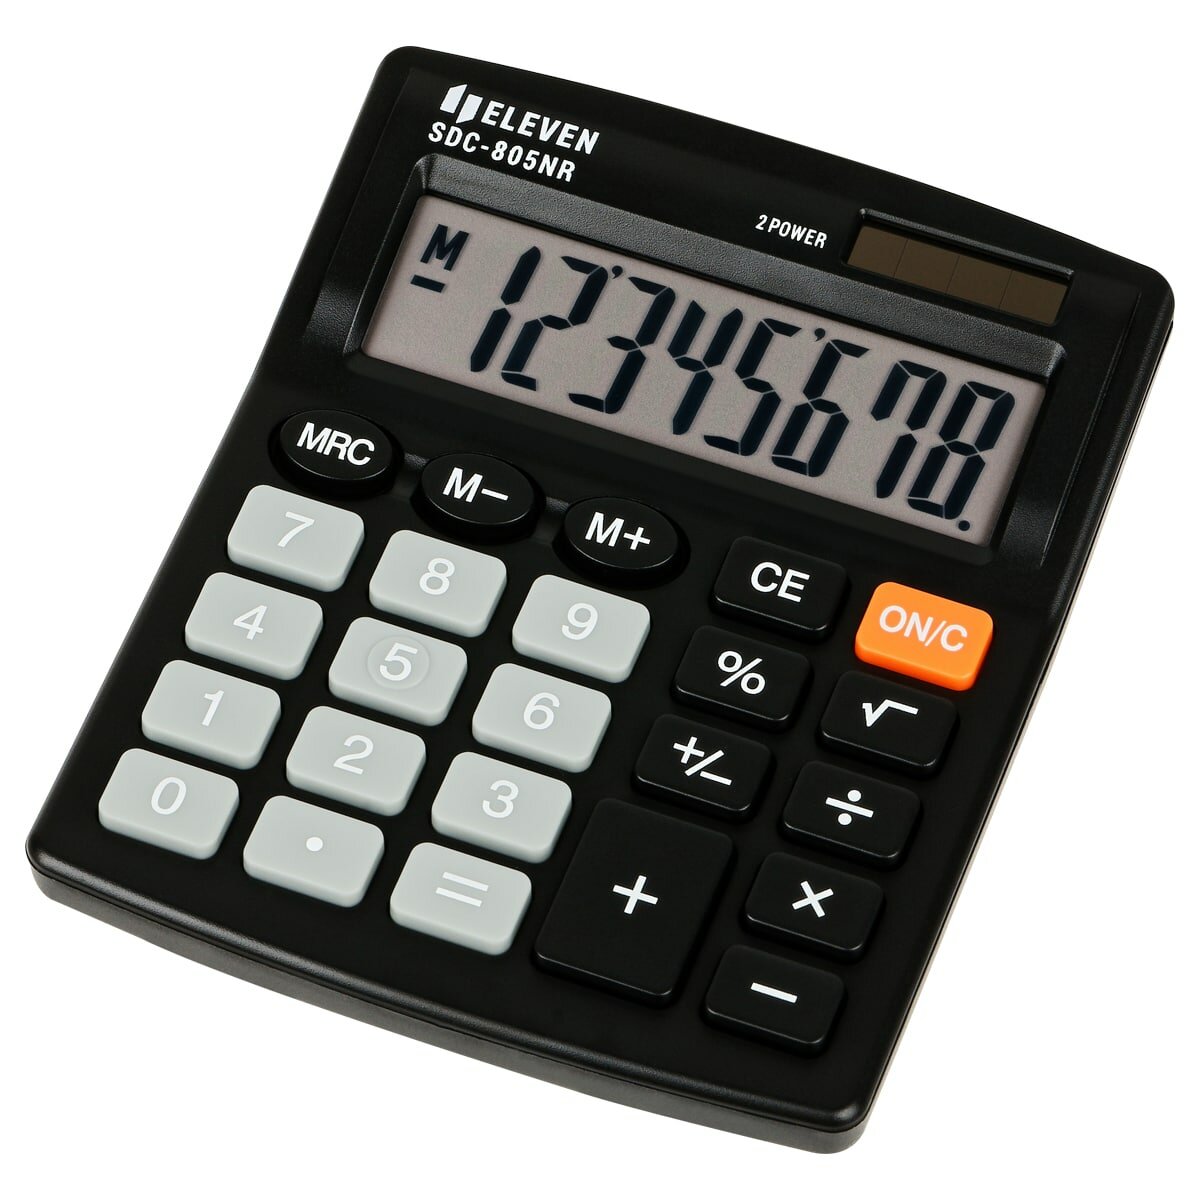 Калькулятор настольный Eleven SDC-805NR, 8 разр, двойное питание, 127*105*21мм, черный